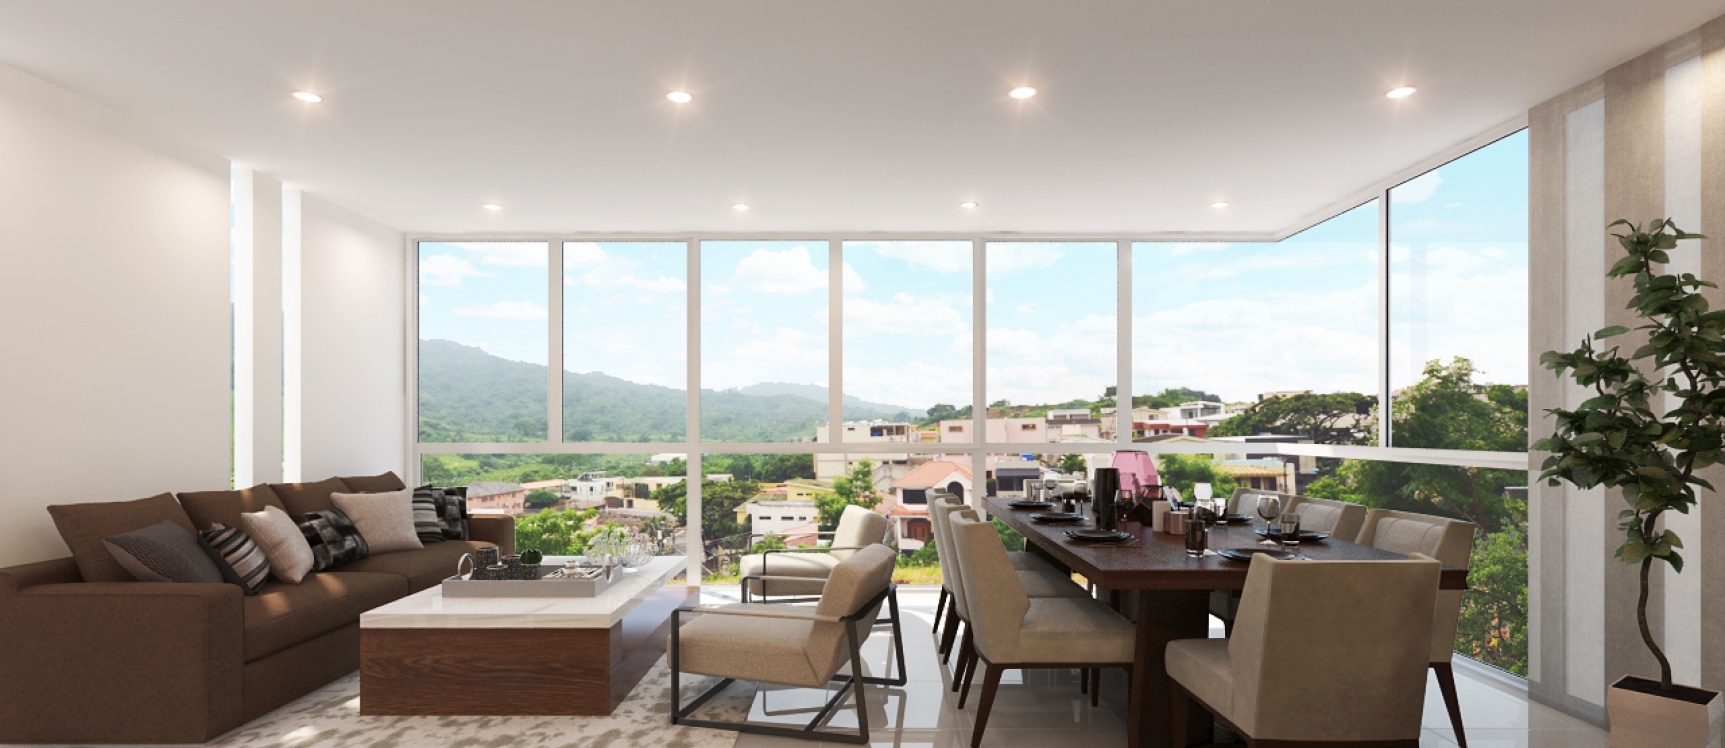 GeoBienes - Departamento en venta primer piso, Vista 816 Guayaquil - Plusvalia Guayaquil Casas de venta y alquiler Inmobiliaria Ecuador